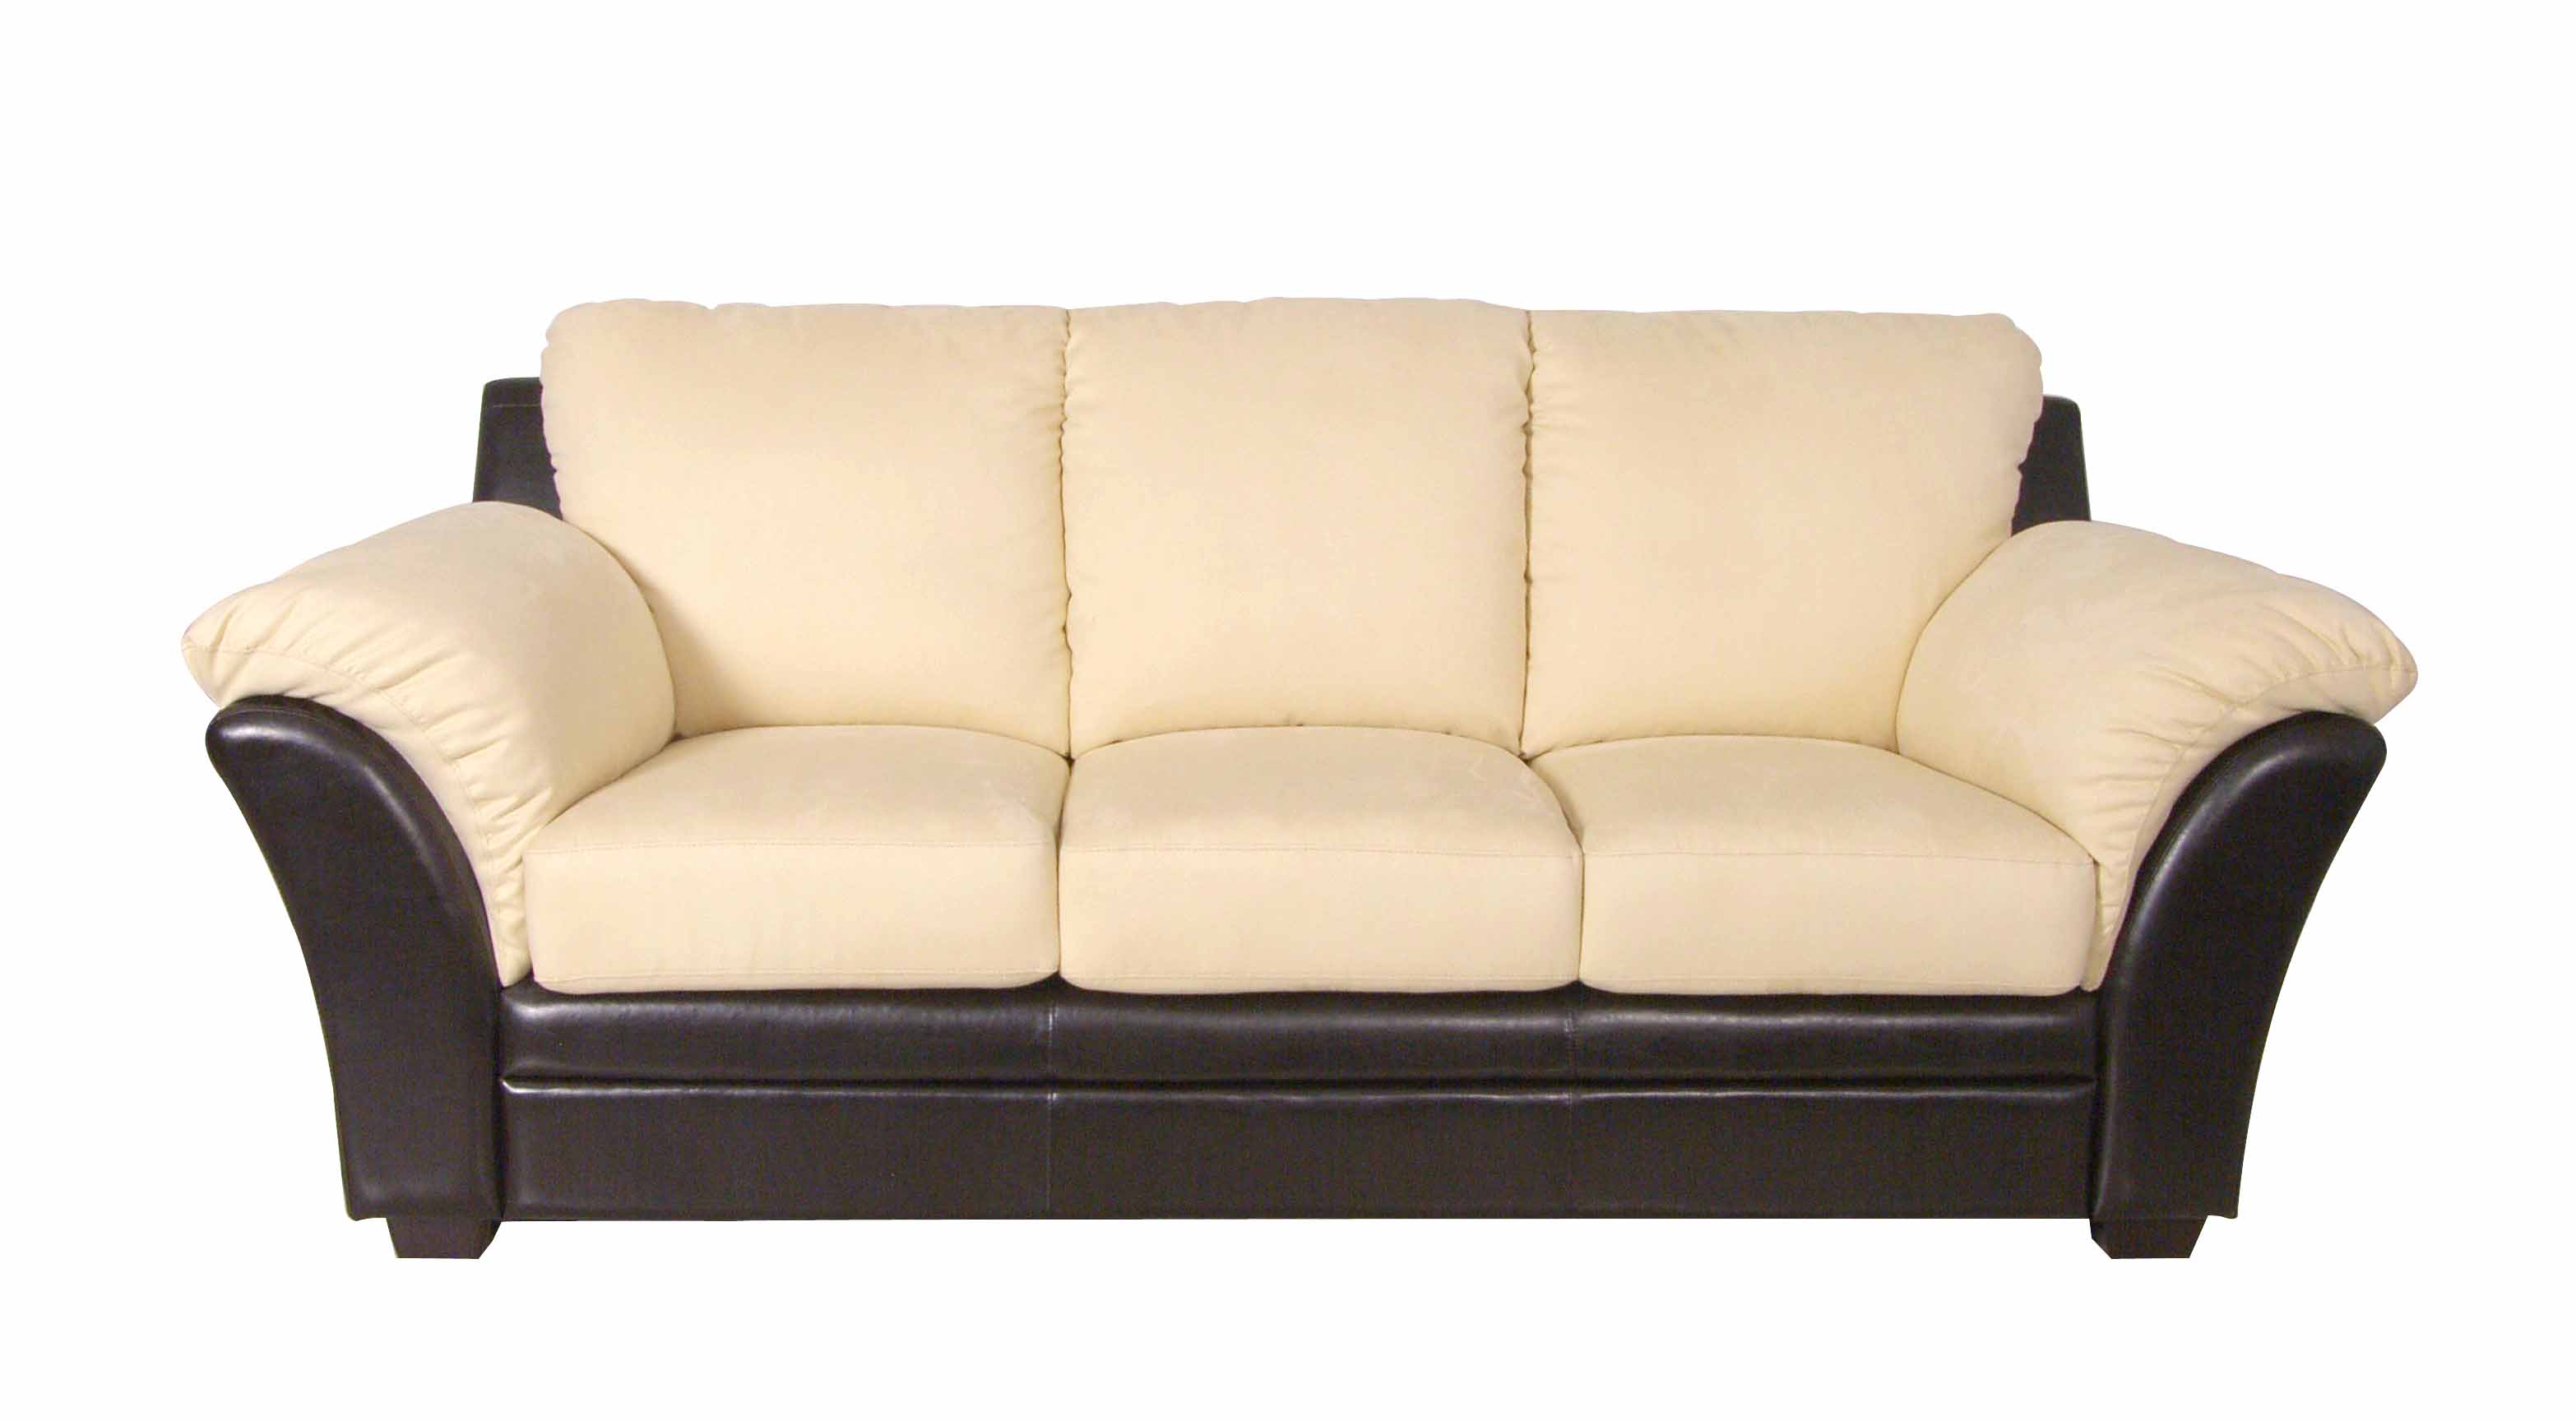 Phoenix Leather Sofa